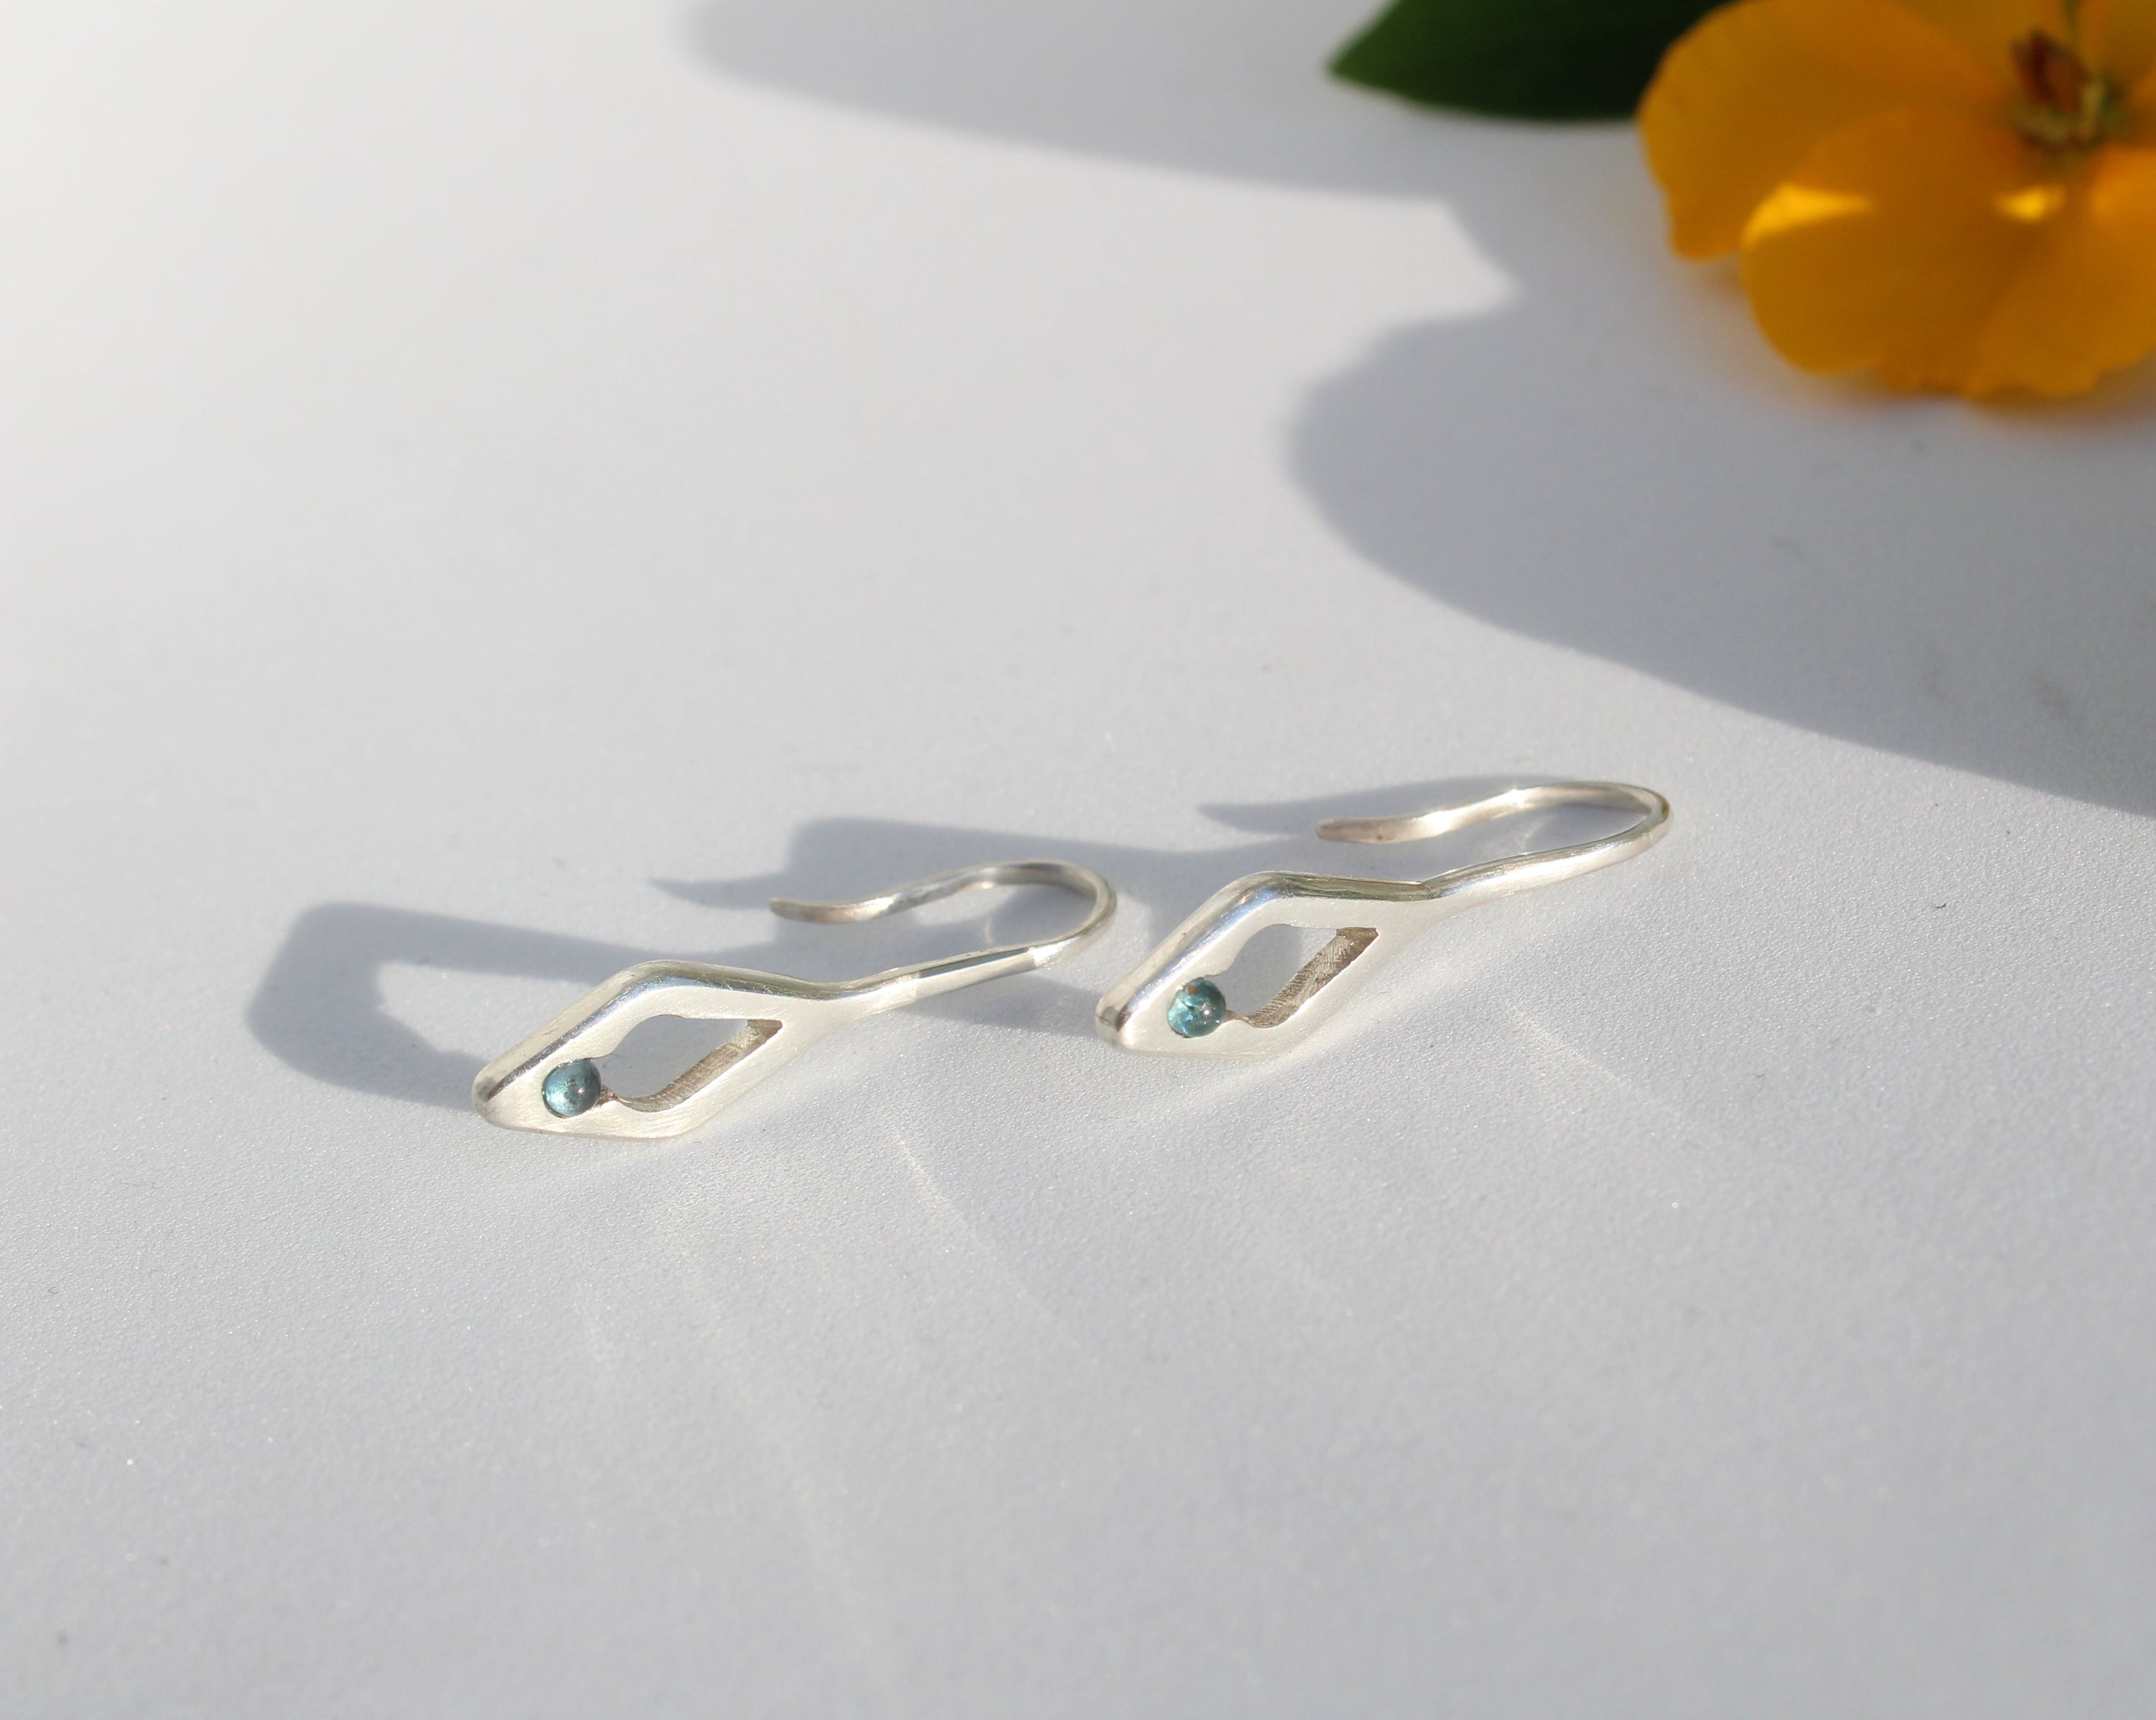 Handmade Silver earrings Naja #03 by Fann!